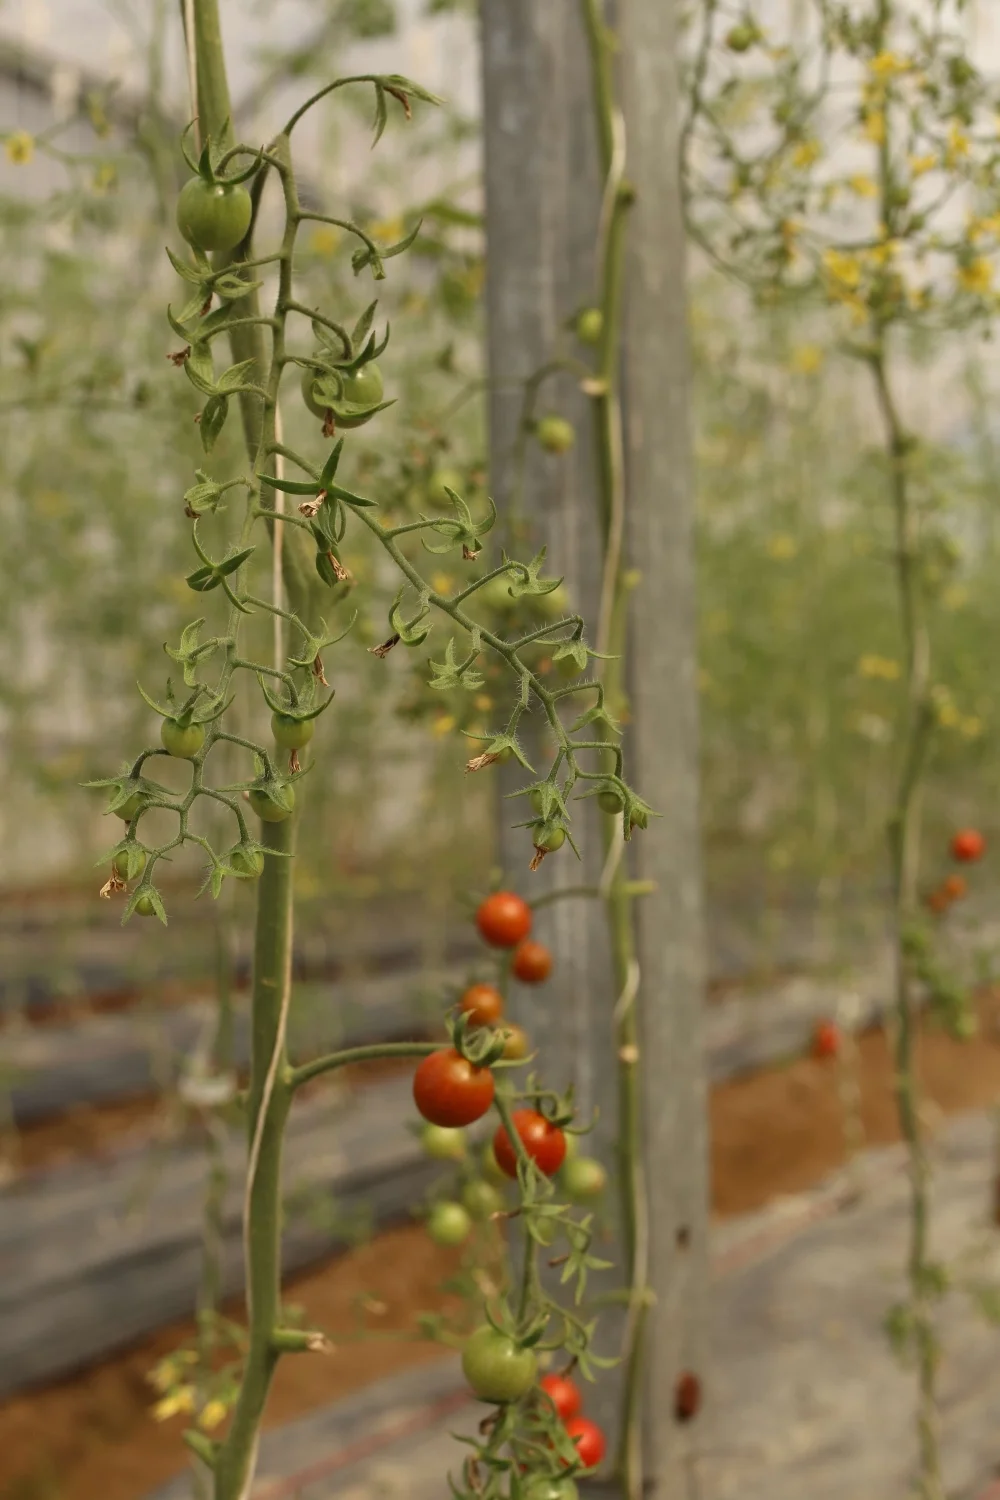 Organic greenhouse farming in Pakistan